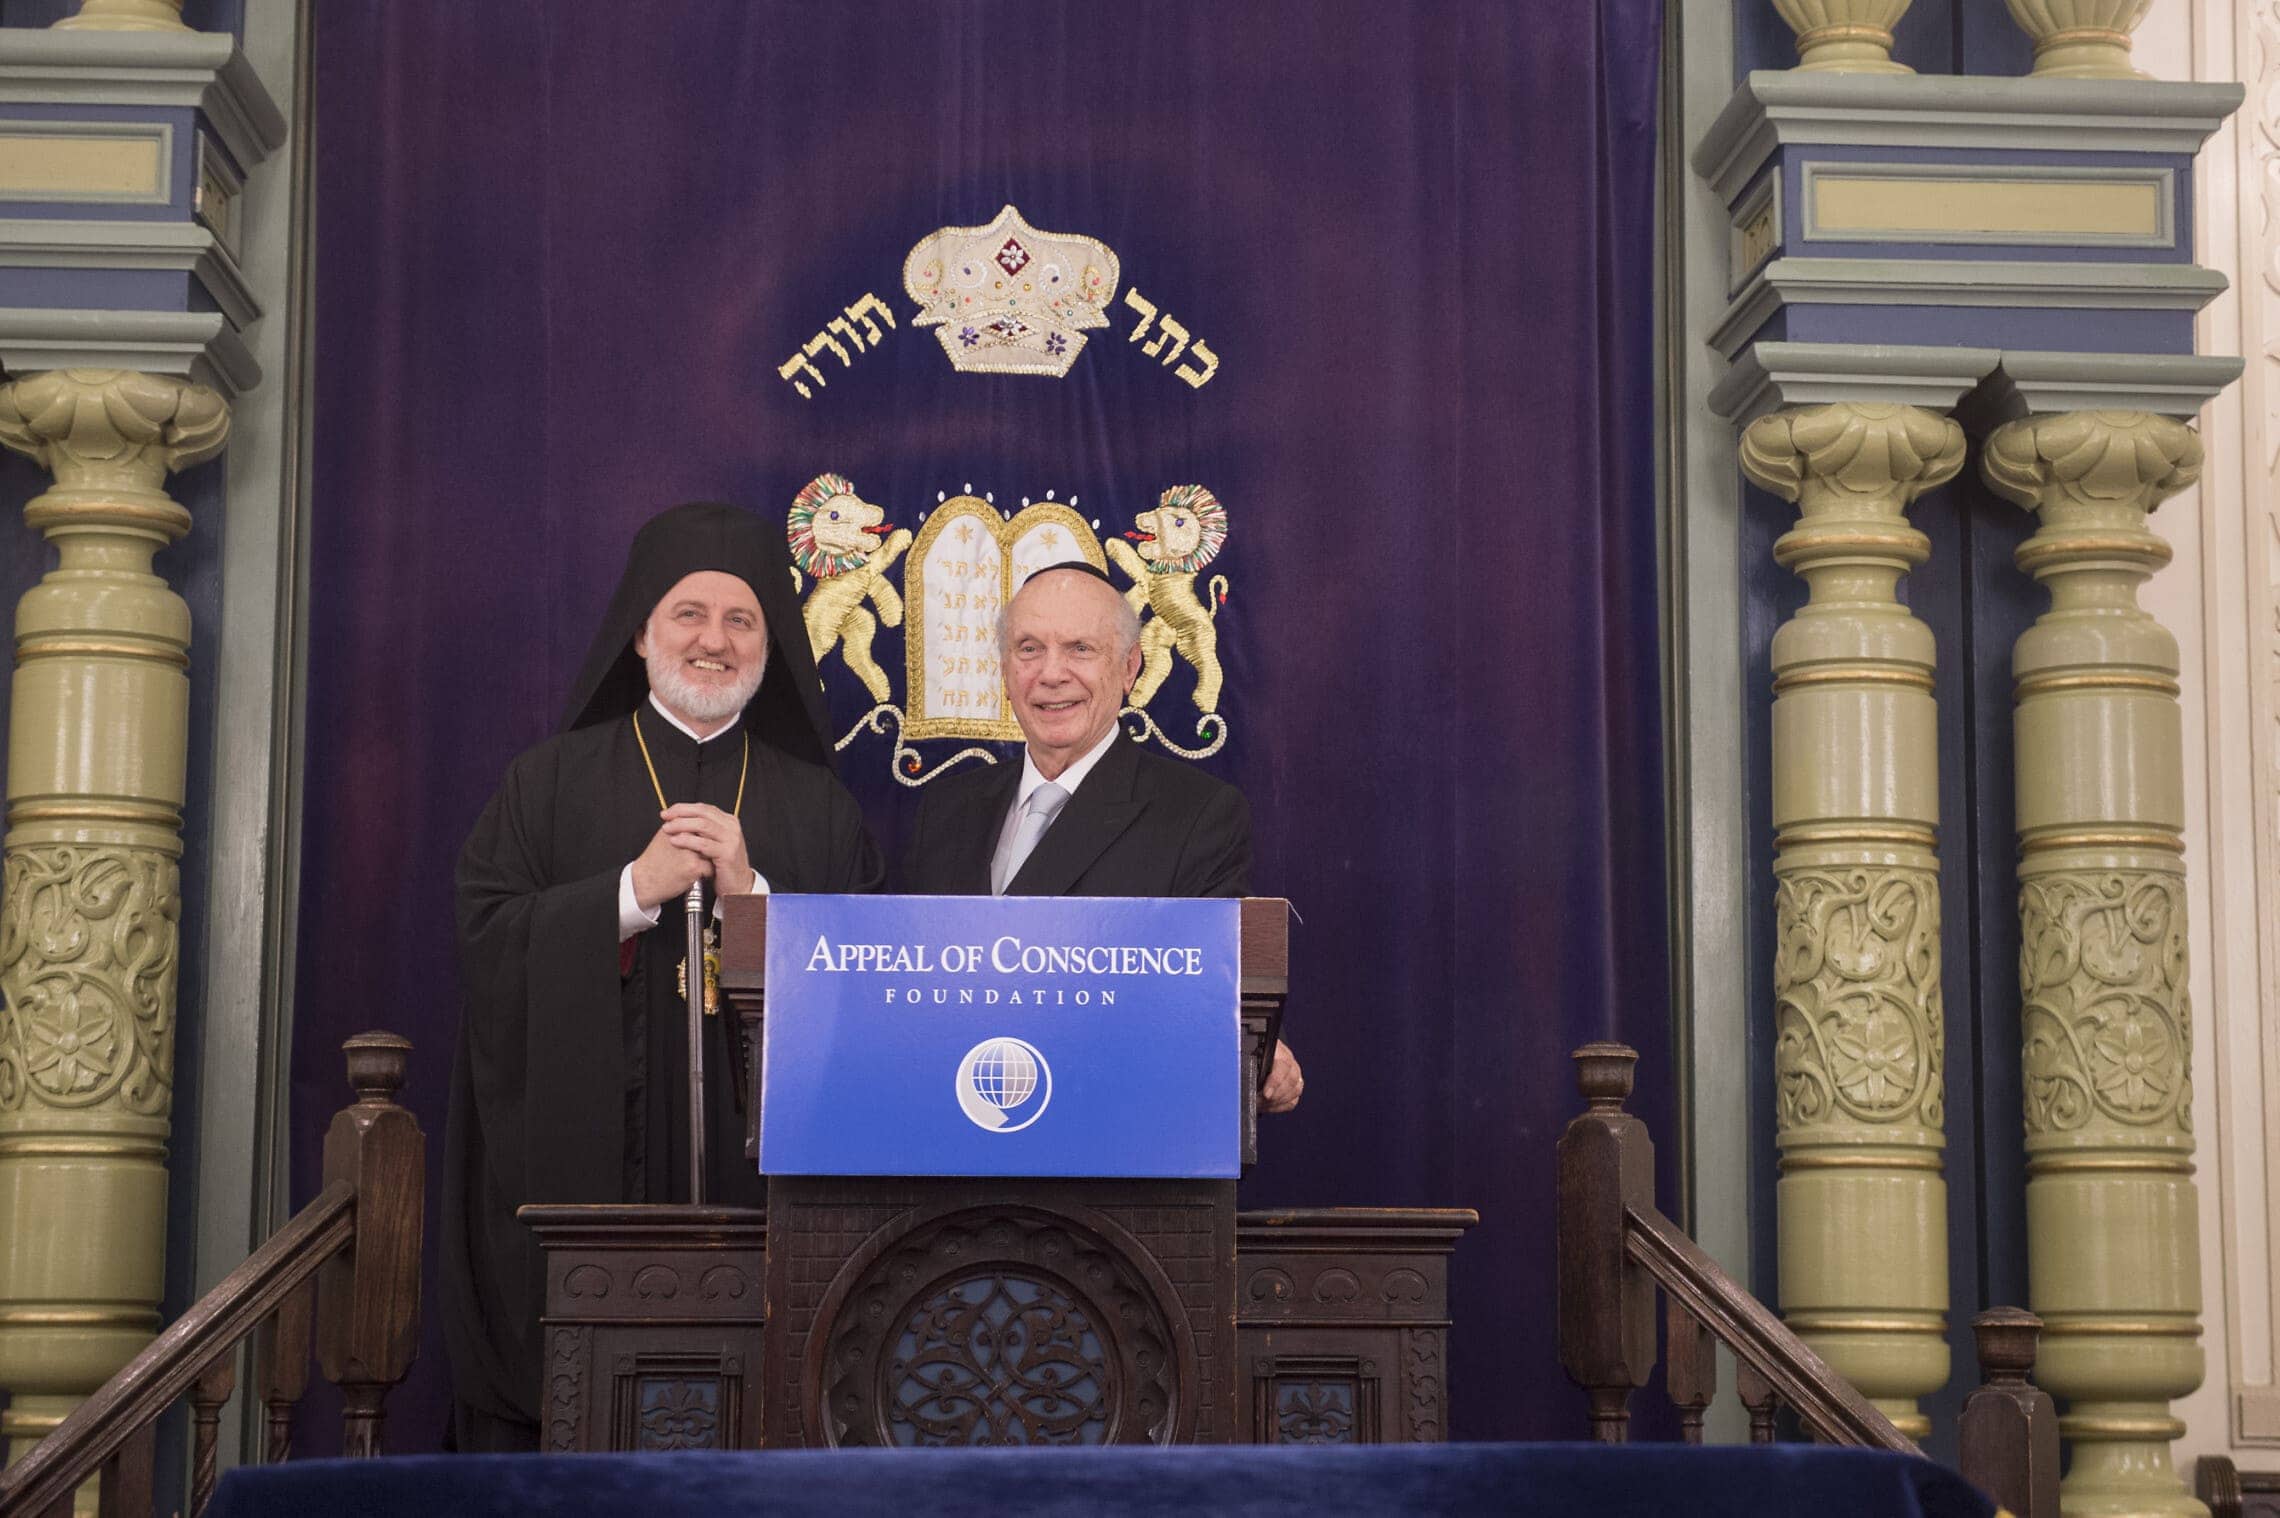 הרב ארתור שניאור והארכיבישוף אלפידופורוס בבית הכנסת, 21 ביוני 2019 (צילום: Diane Bondareff/AP Images for Appeal of Conscience Foundation)